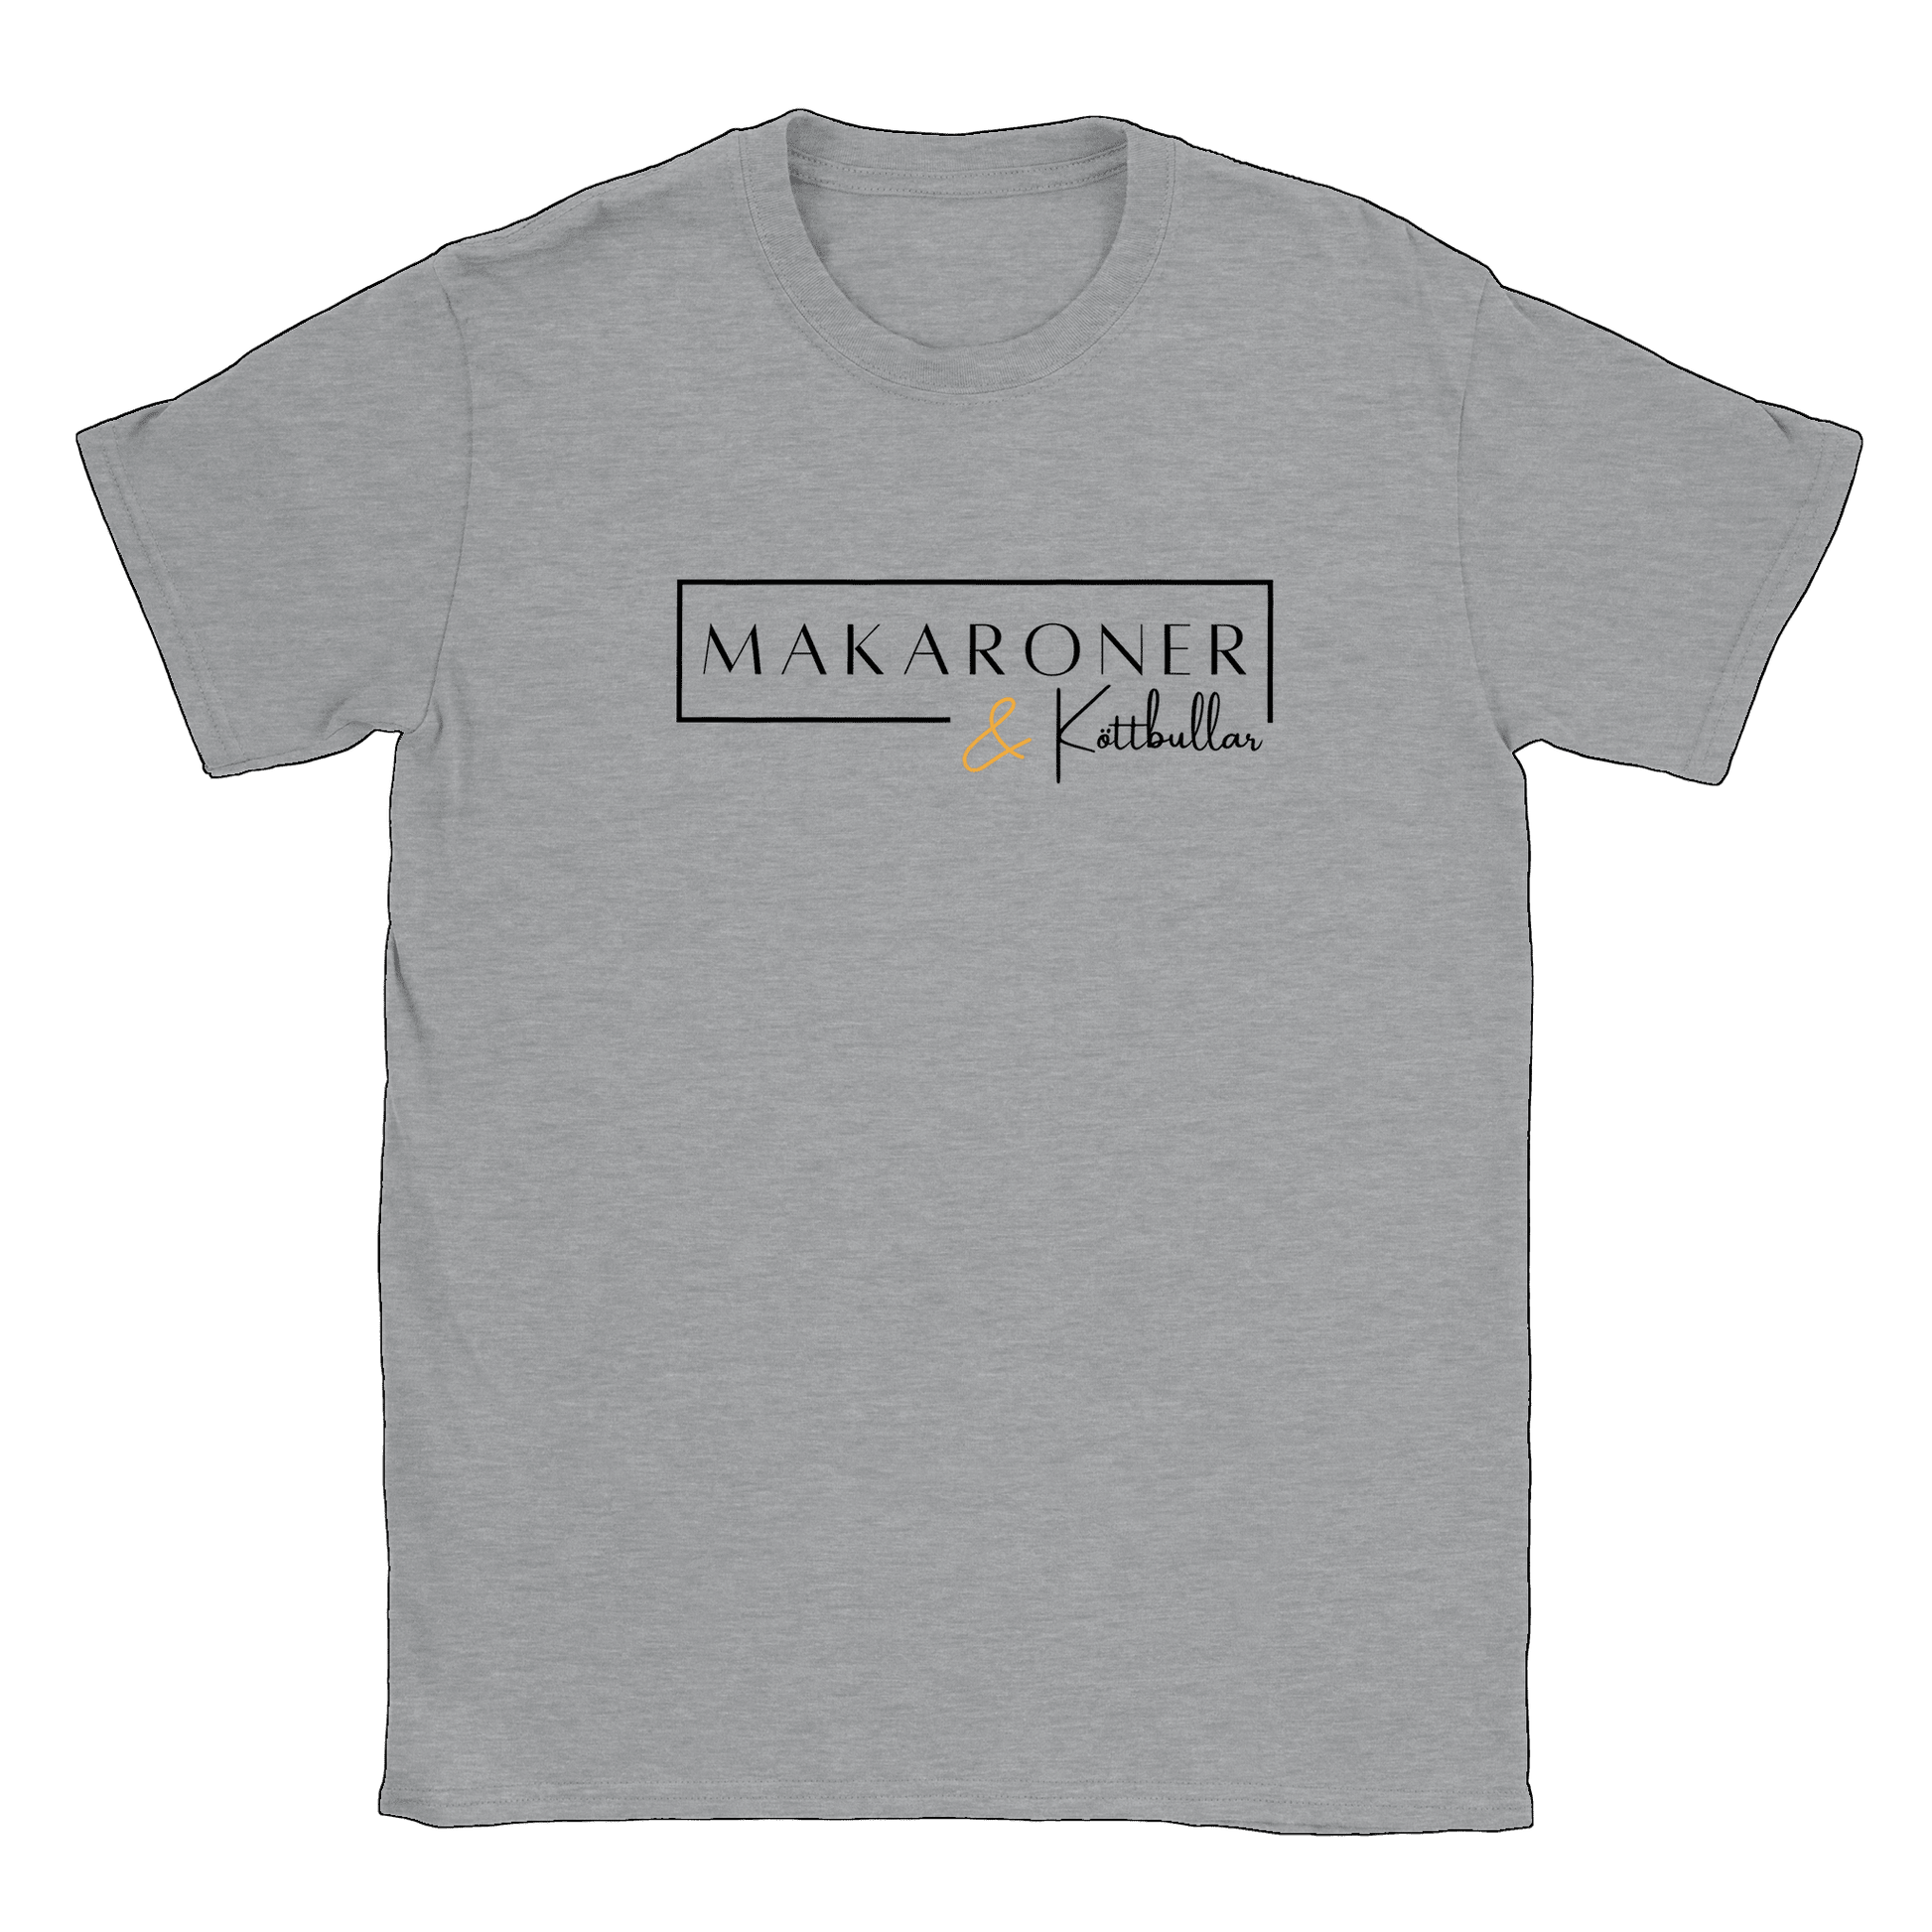 Makaroner och Köttbullar - T-shirt Sports Grey